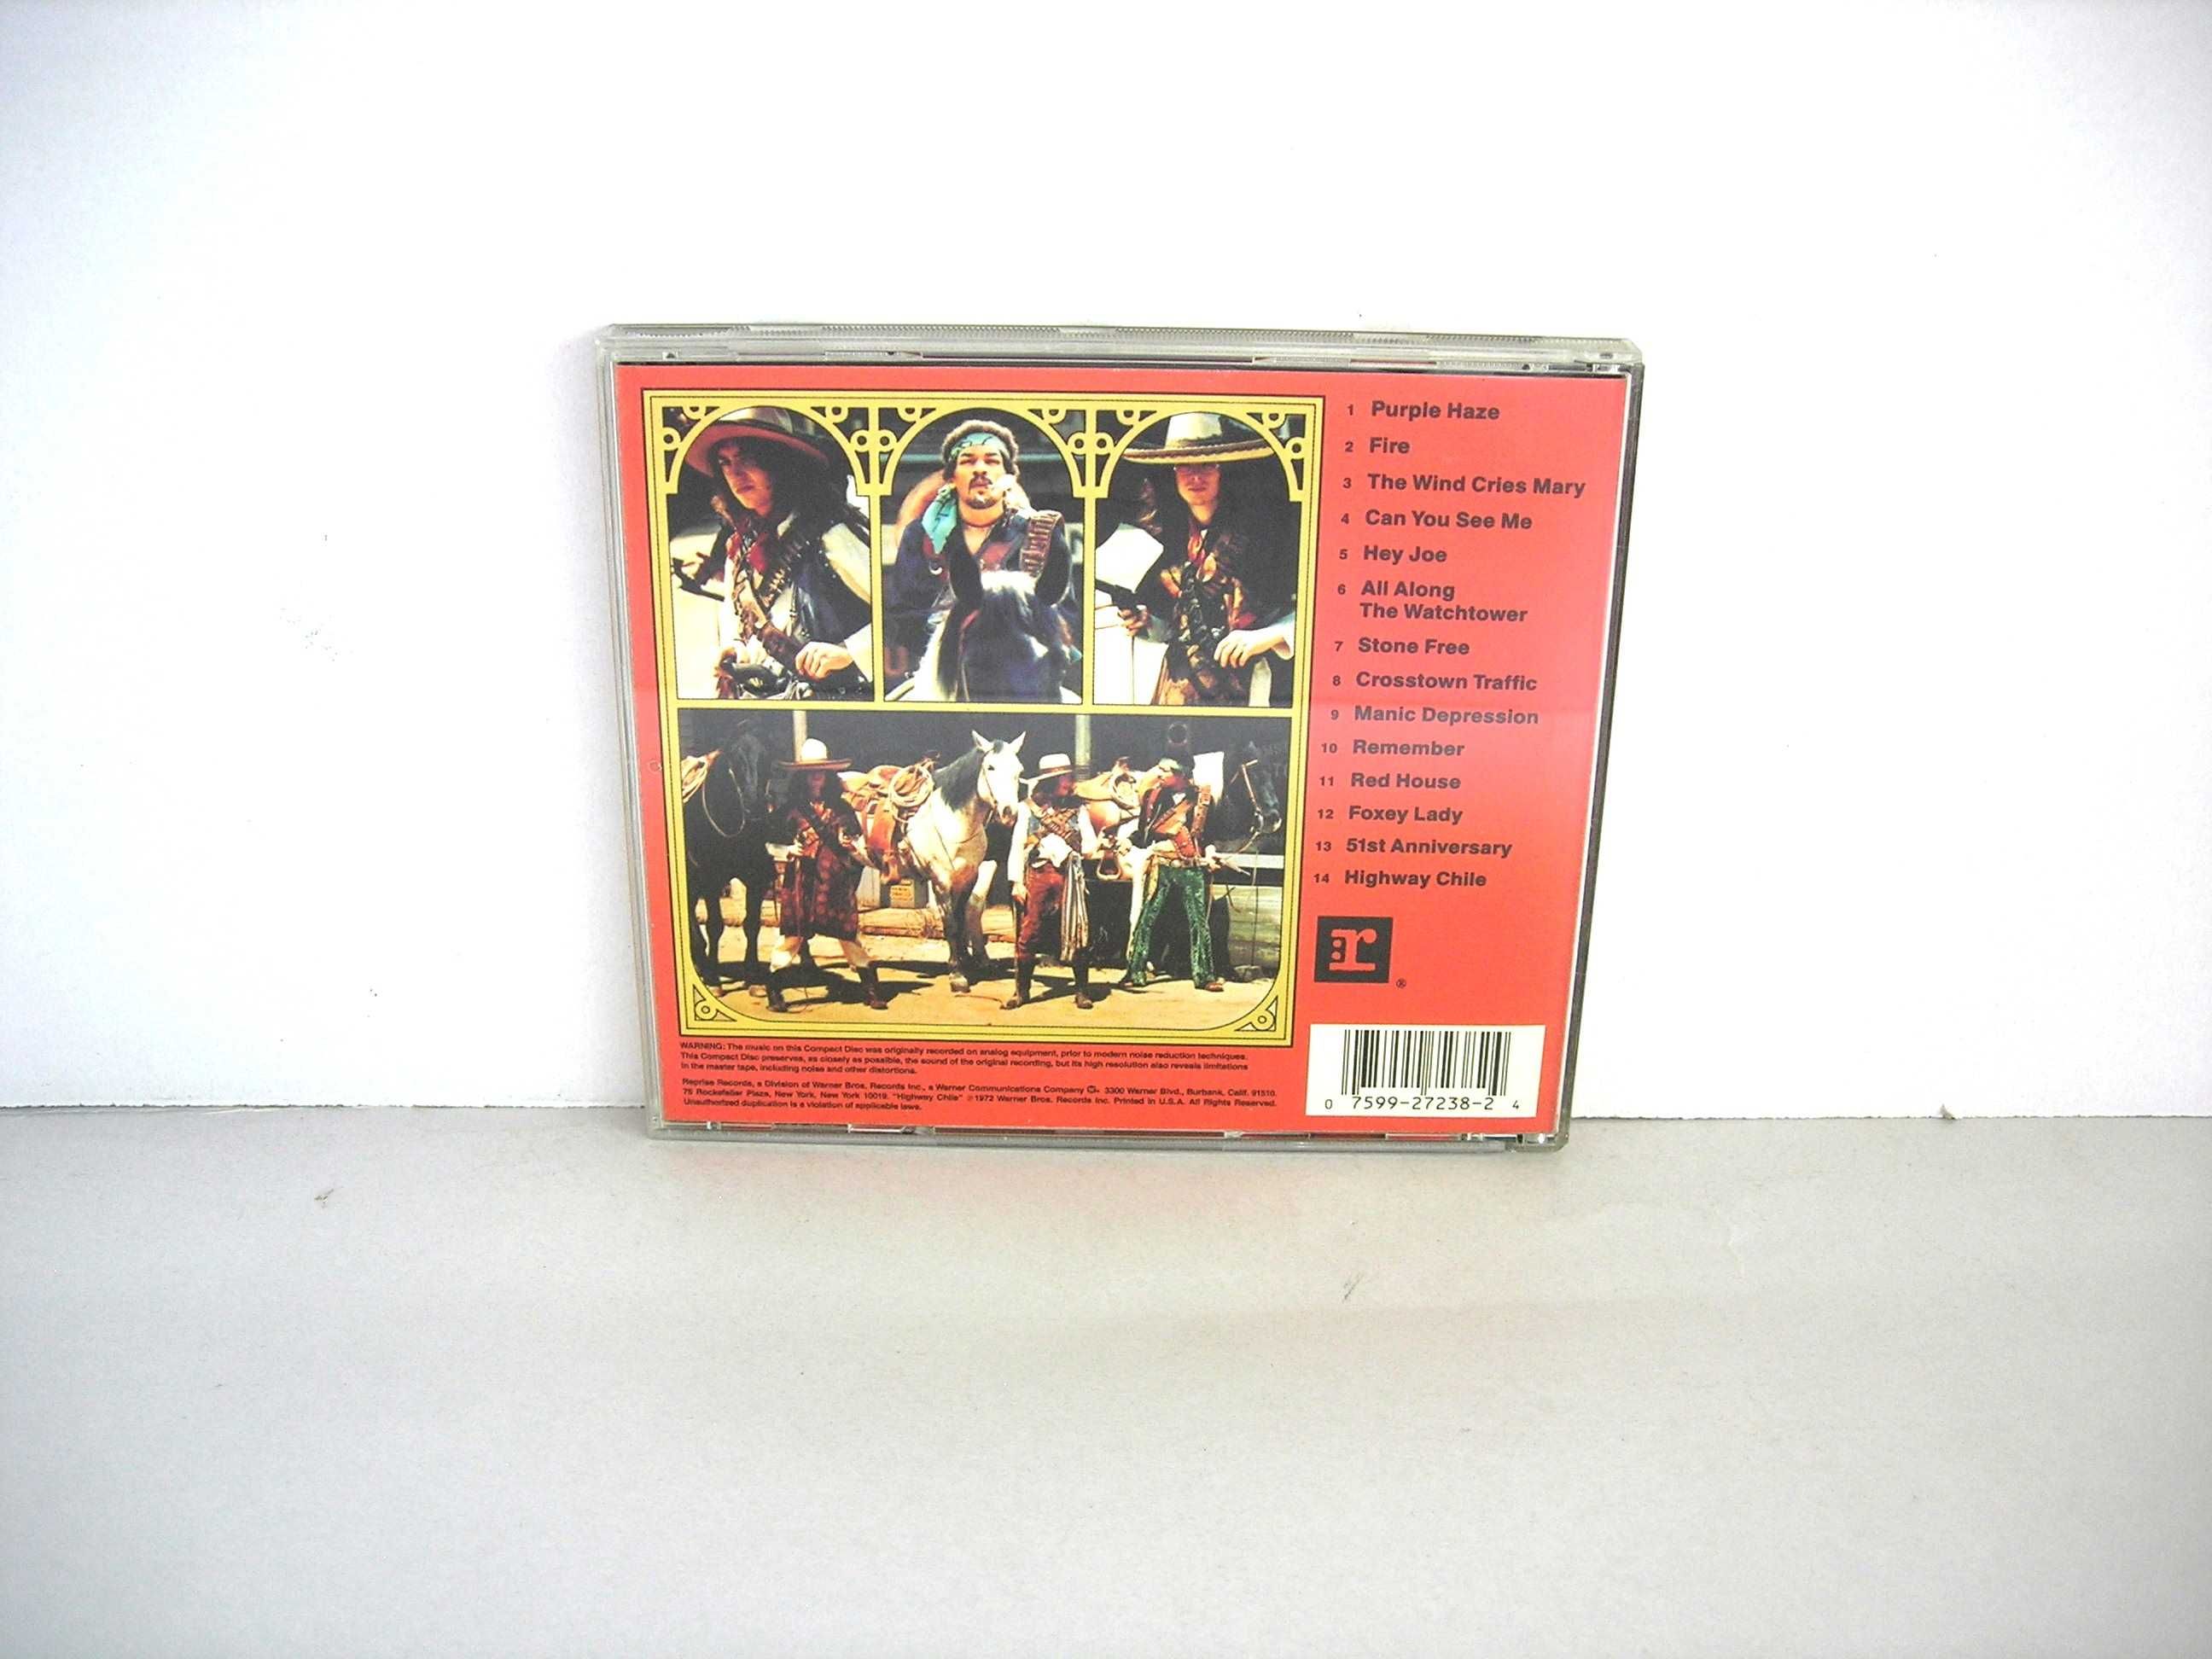 Jimi Hendrix Experience "Smash Hits" CD Reprise Records 1988 USA